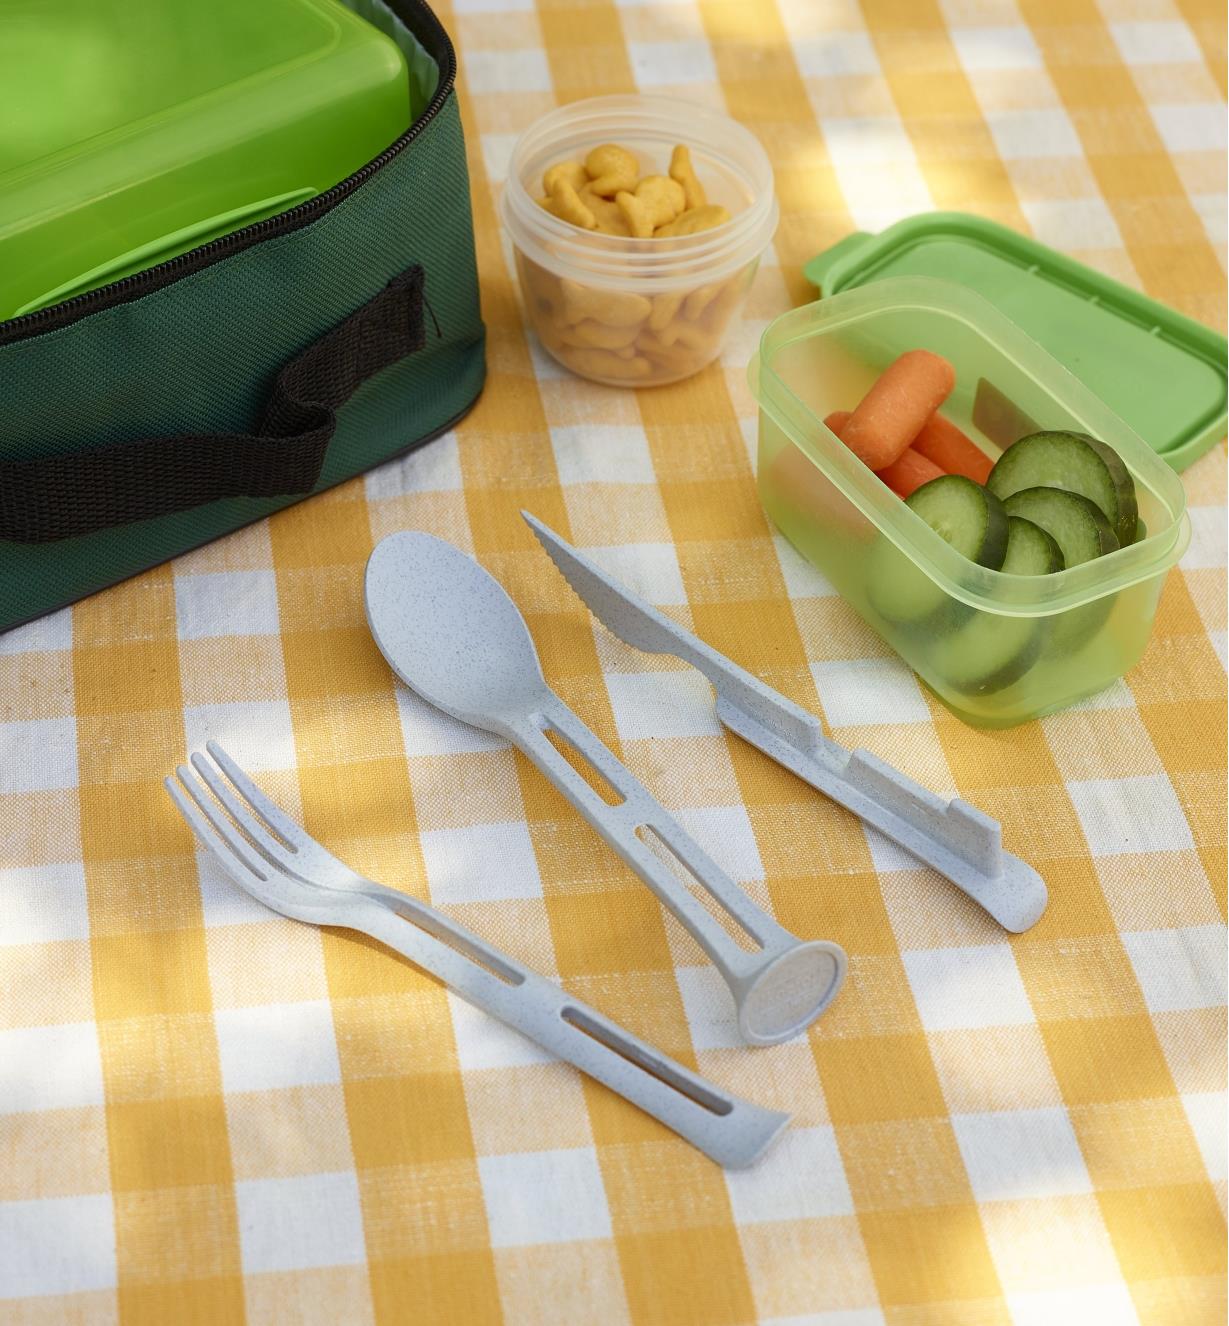 Couteau, fourchette et cuillère d'un ensemble de petits ustensiles Klikk gris séparé près de contenants de nourriture